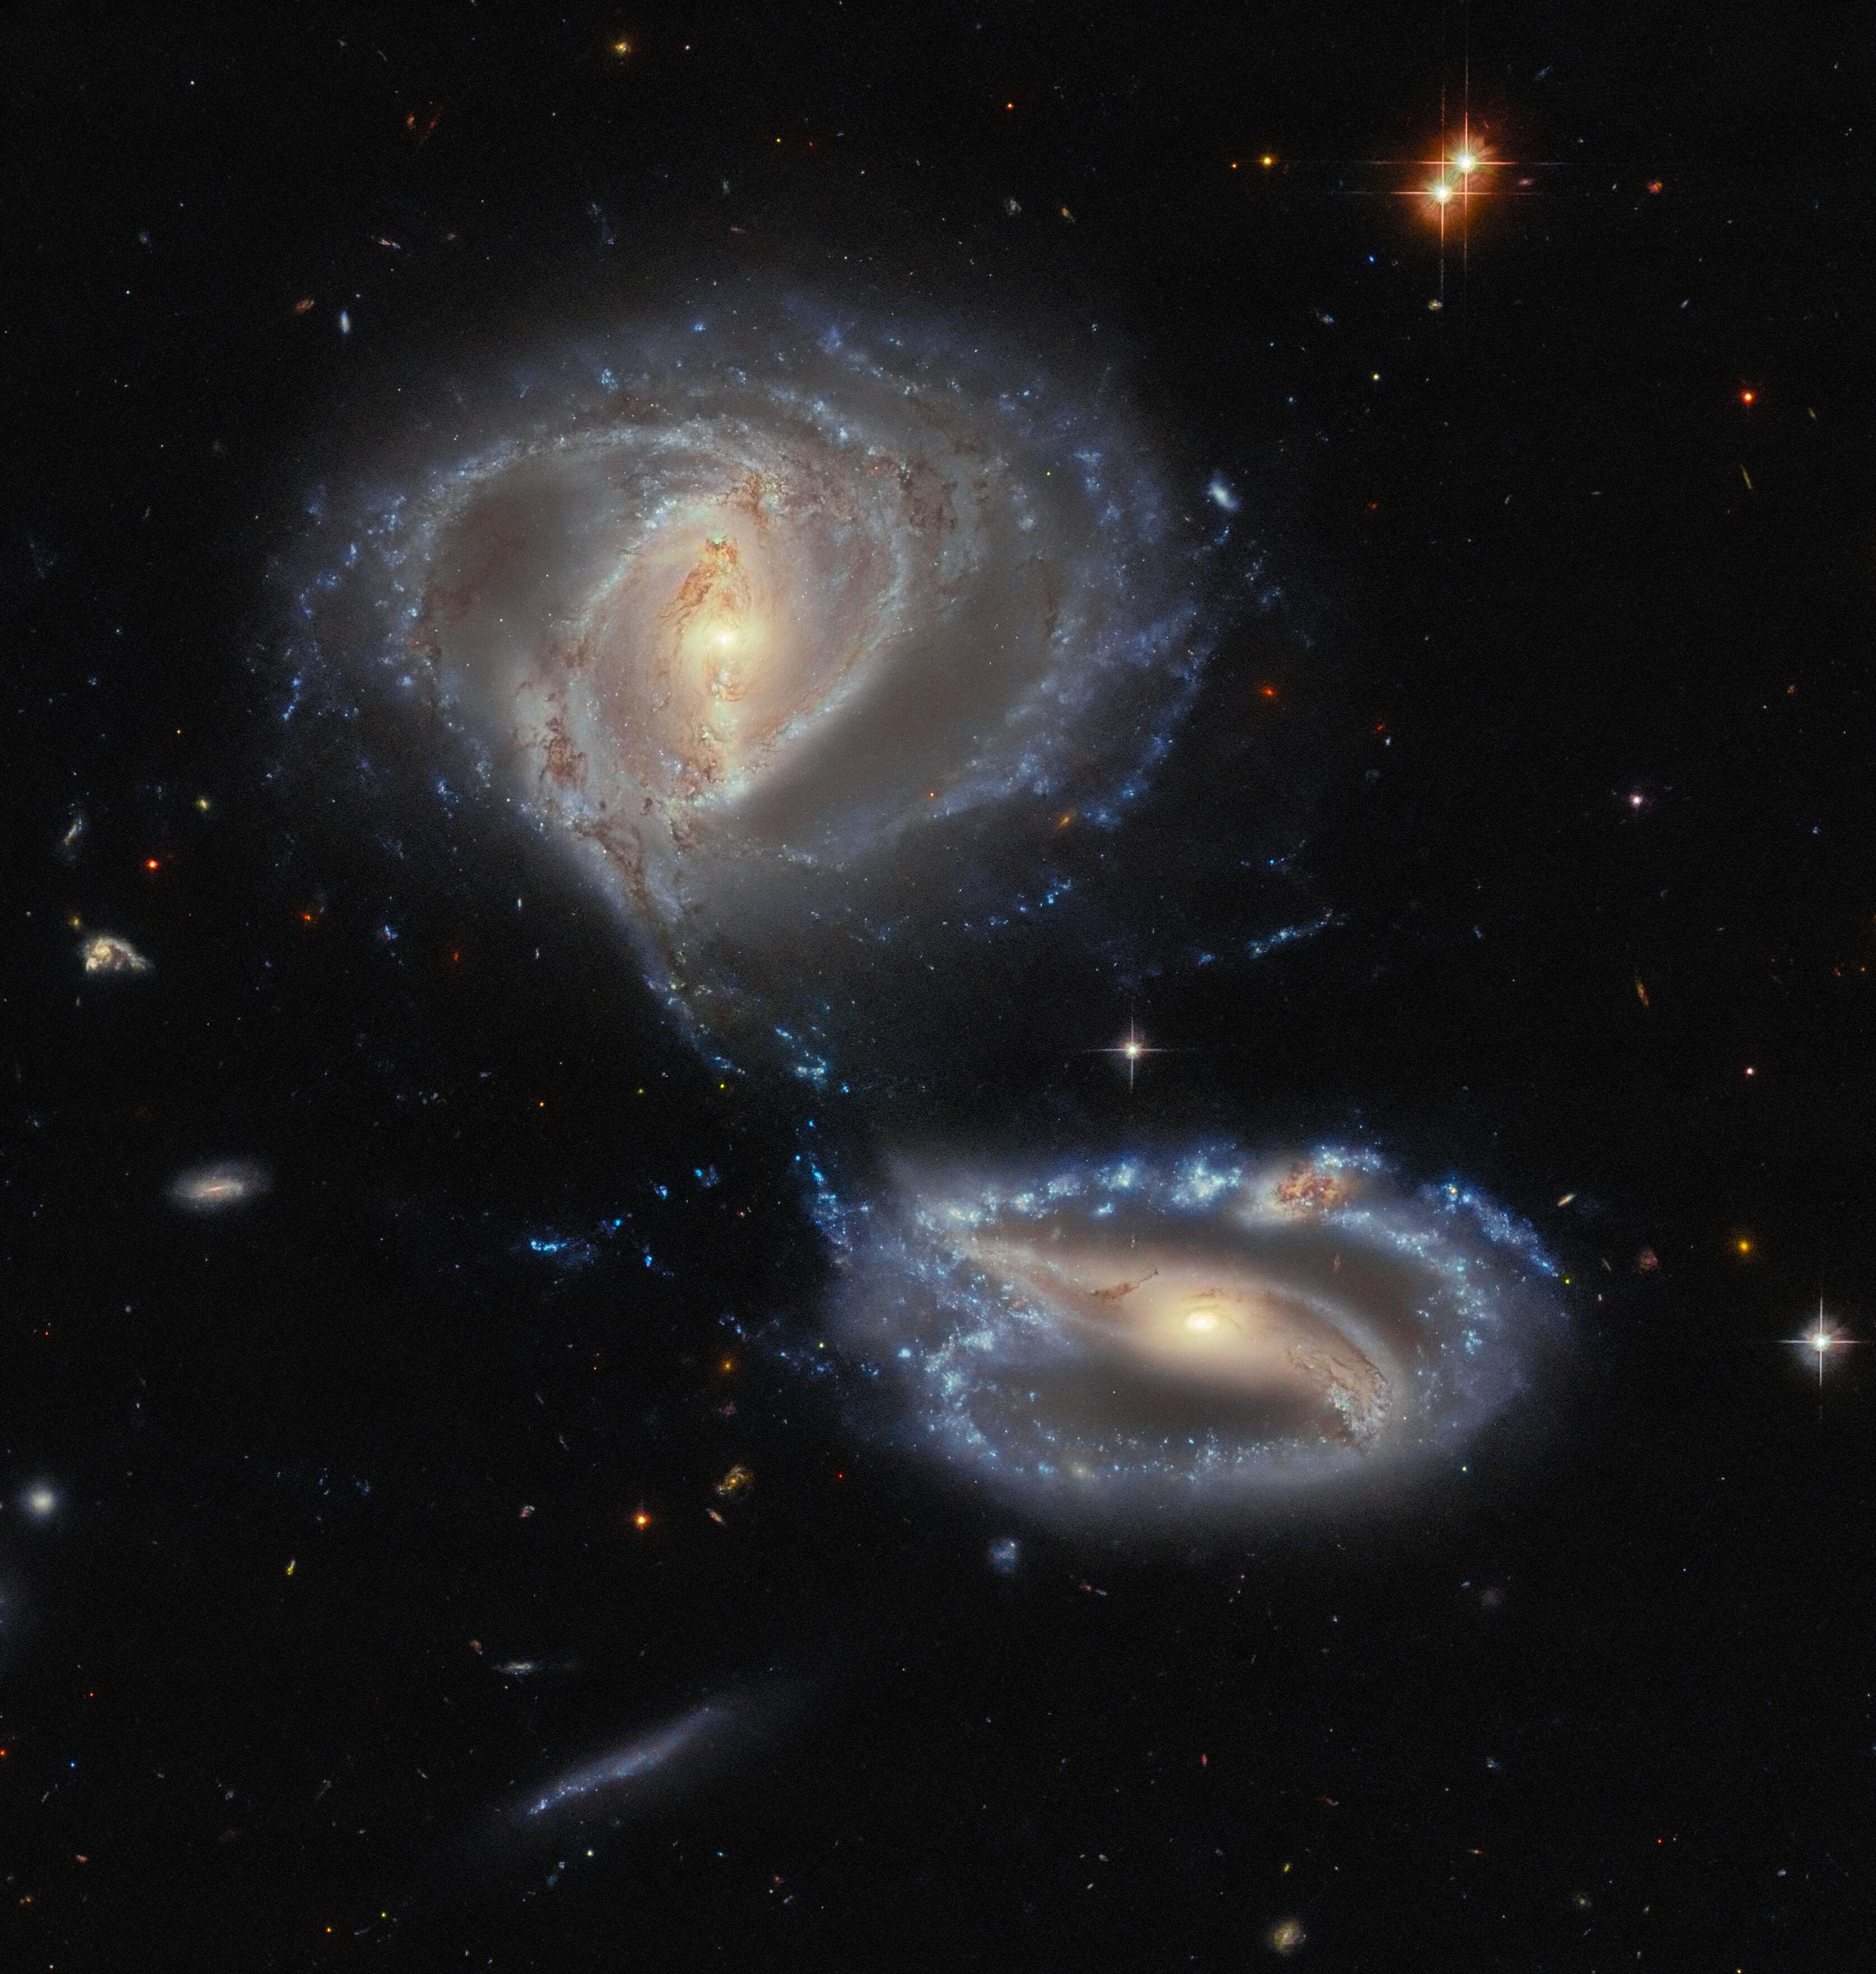 ハッブルが捉えた銀河のダンス(Hubble Captures a Galactic Dance